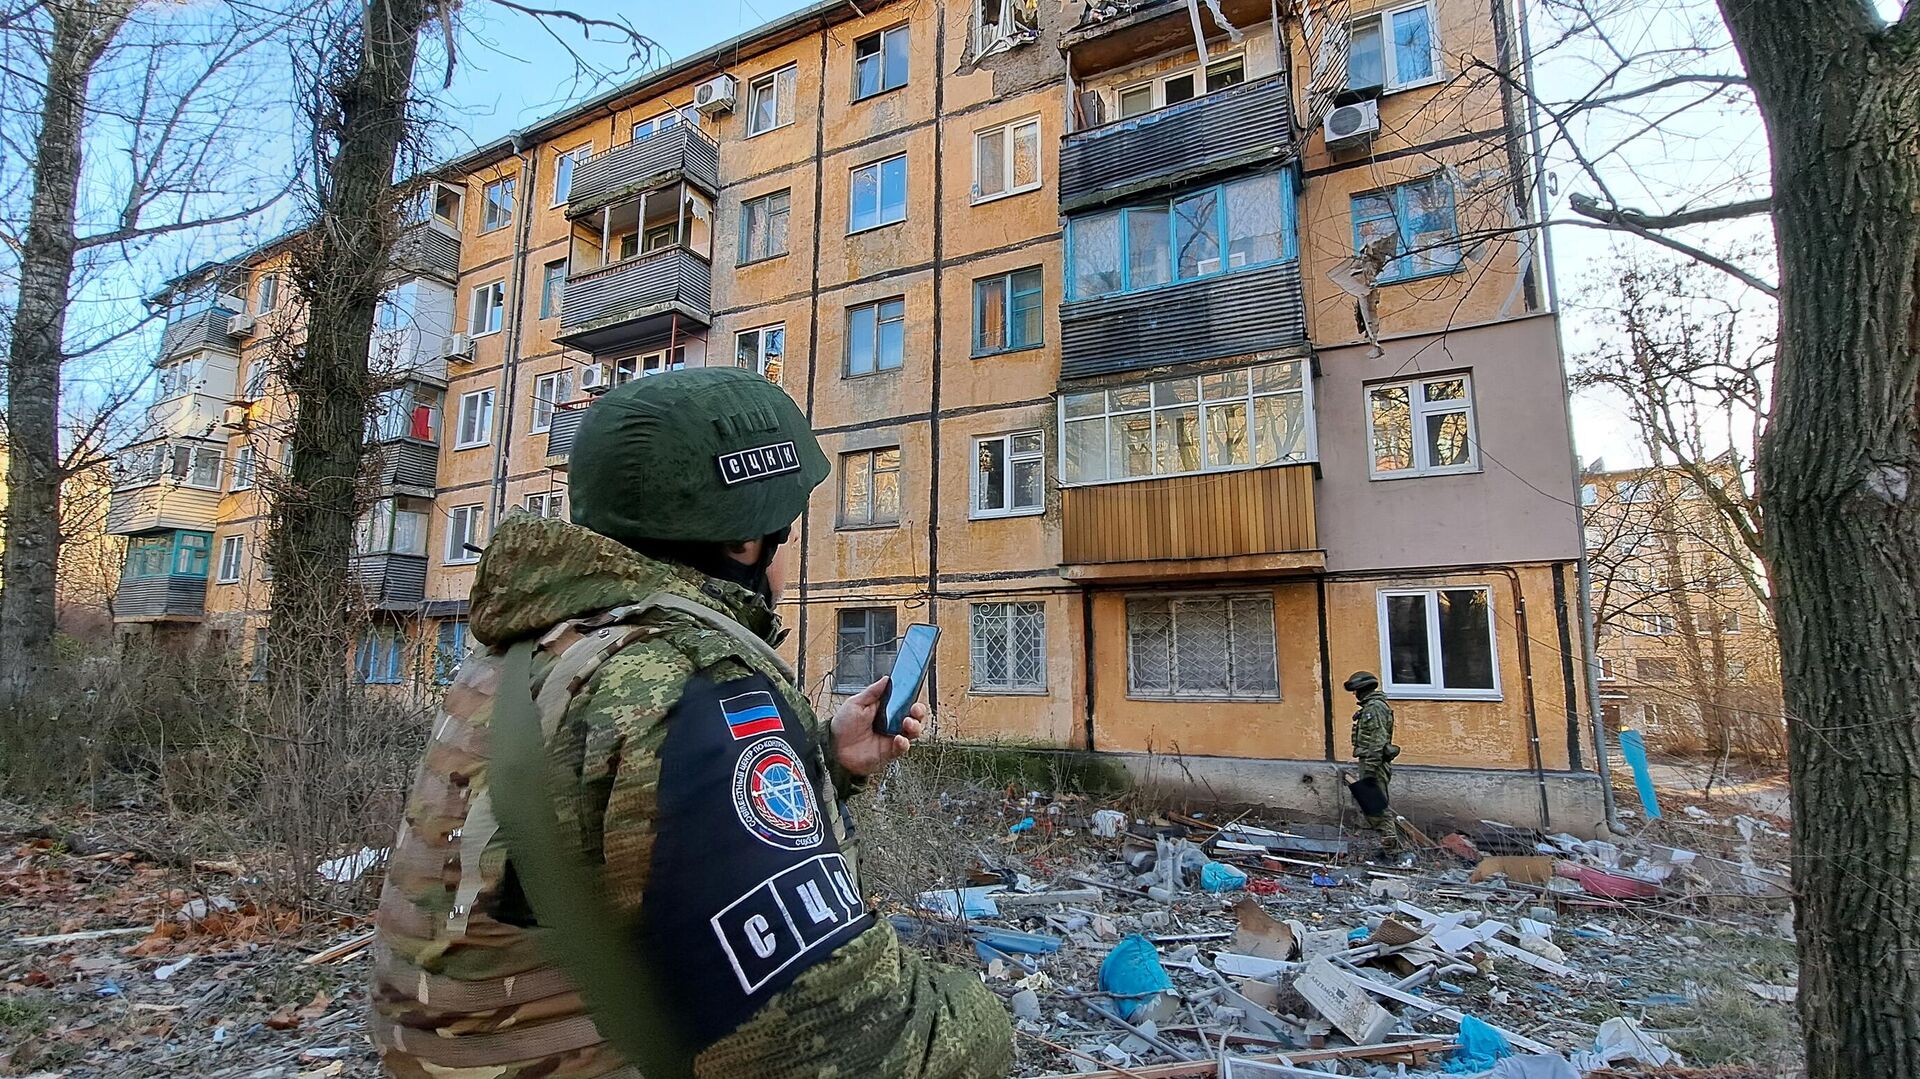 Спецоперация, 15 декабря: Донецк подвергся самому массированному обстрелу - РИА Новости, 15.12.2022